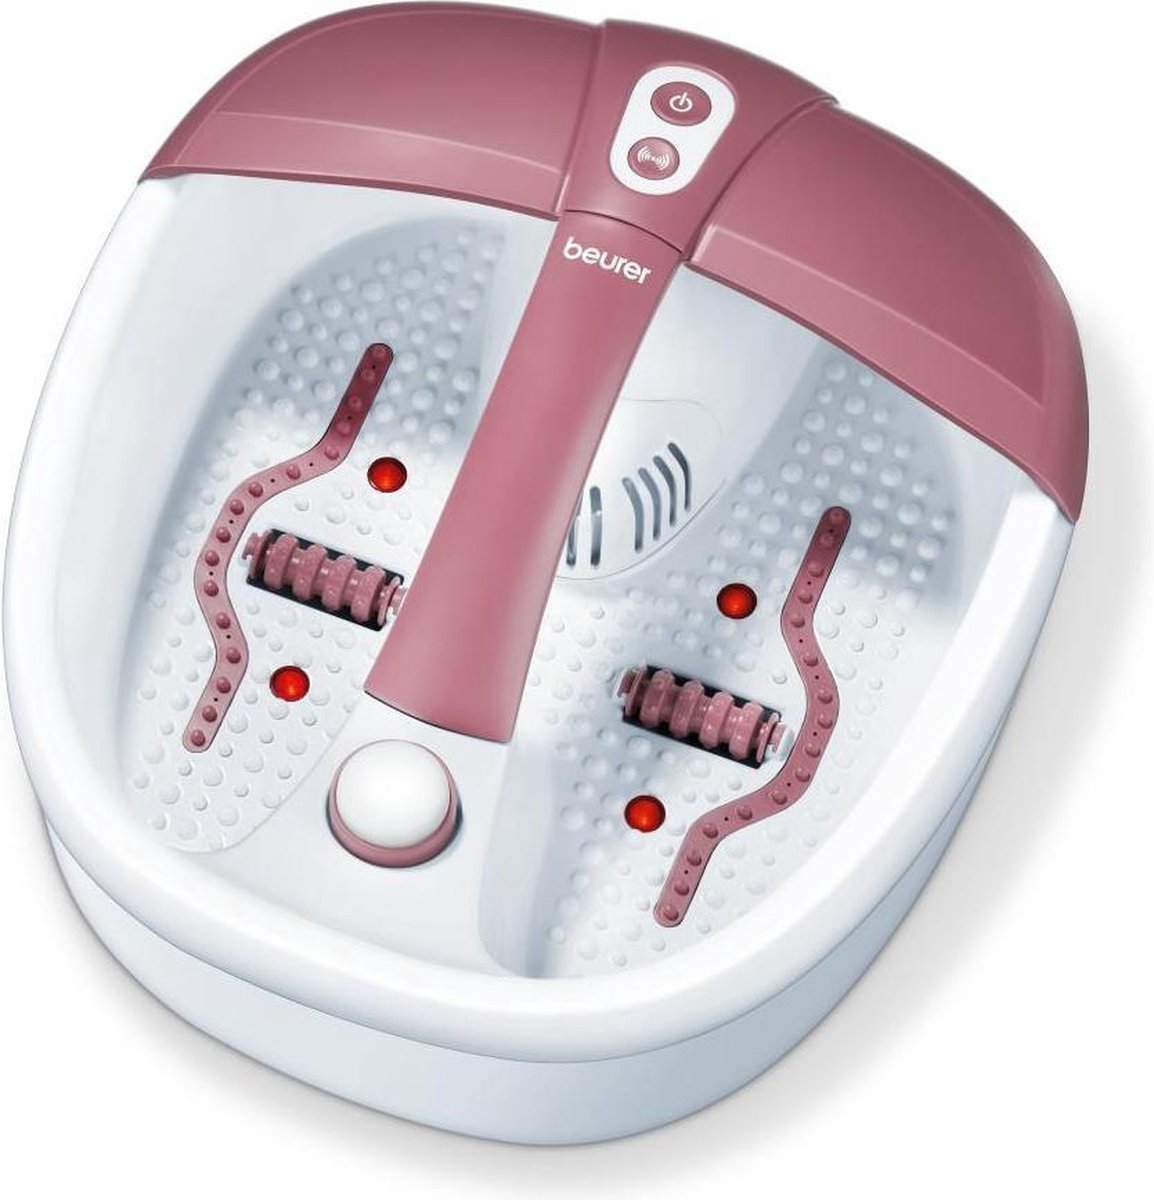 Beurer FB35 met voetenbad met massage knopjes, opzetstukjes, infrarood